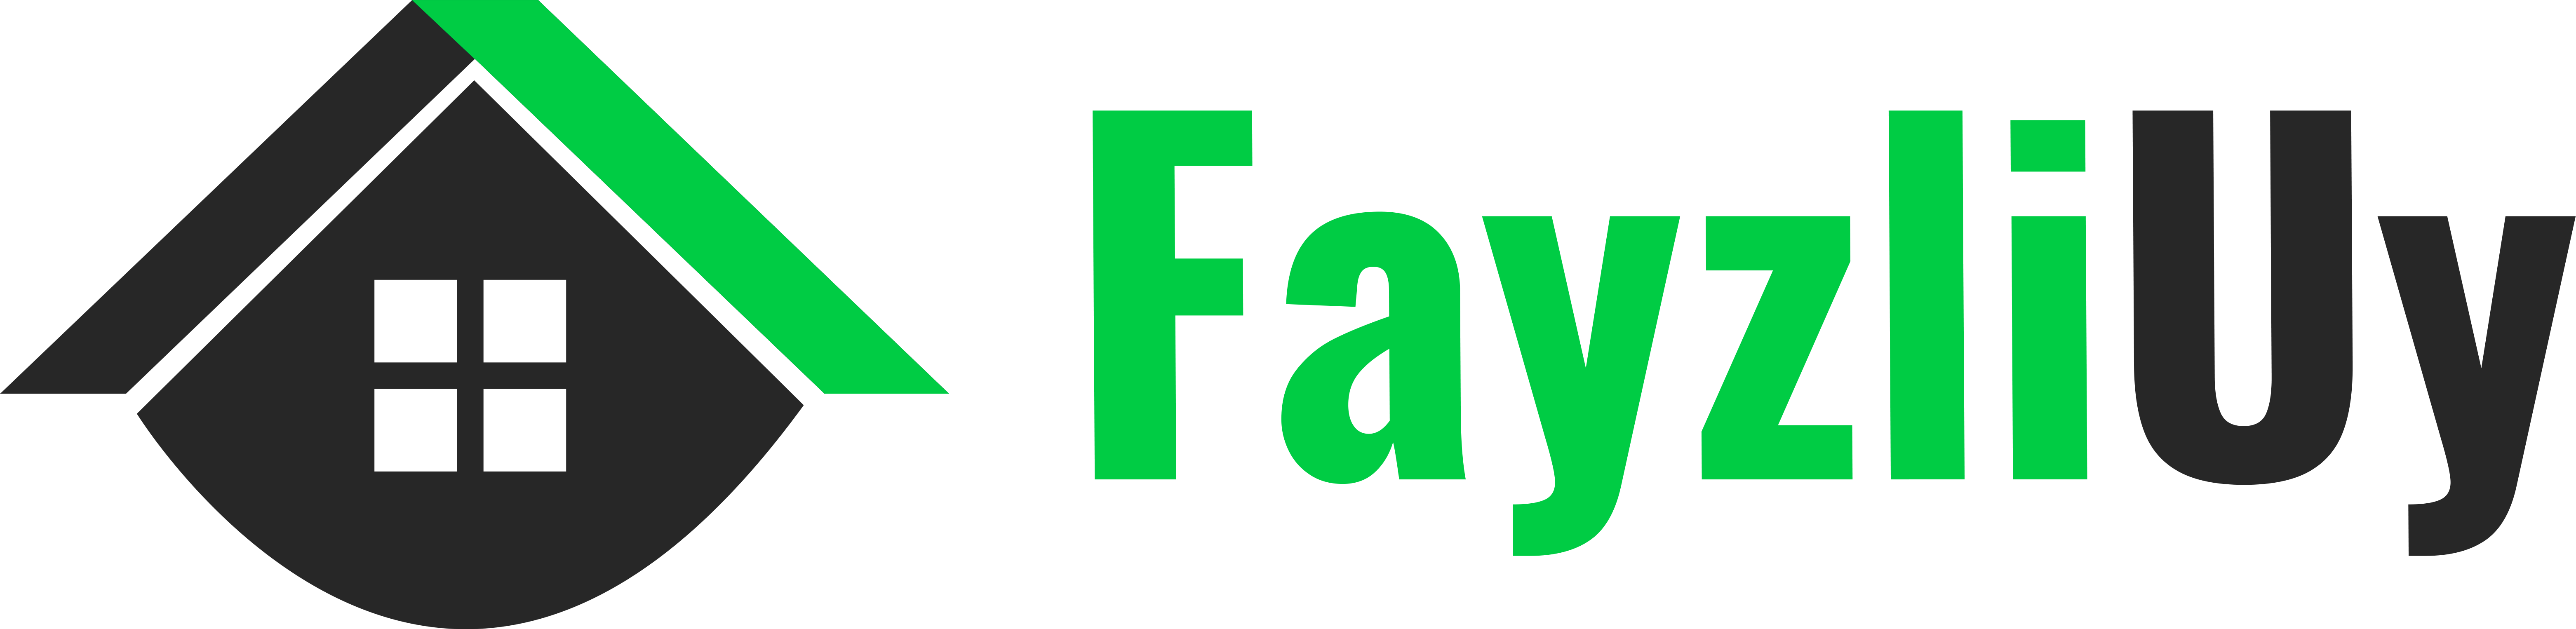 998 71. Fayzli logo.